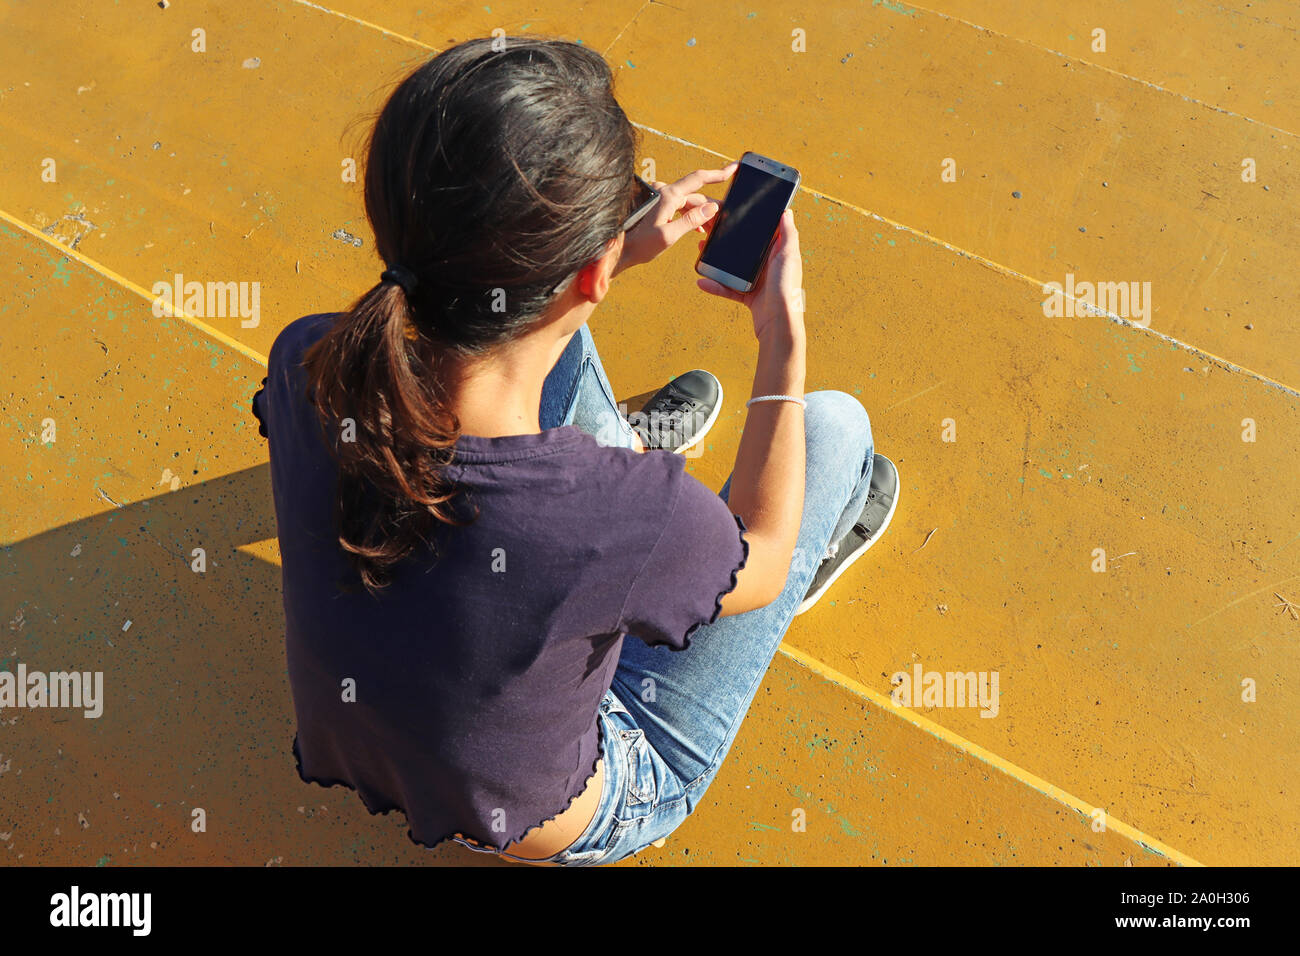 Jeune fille regardant smart mobile phone Banque D'Images